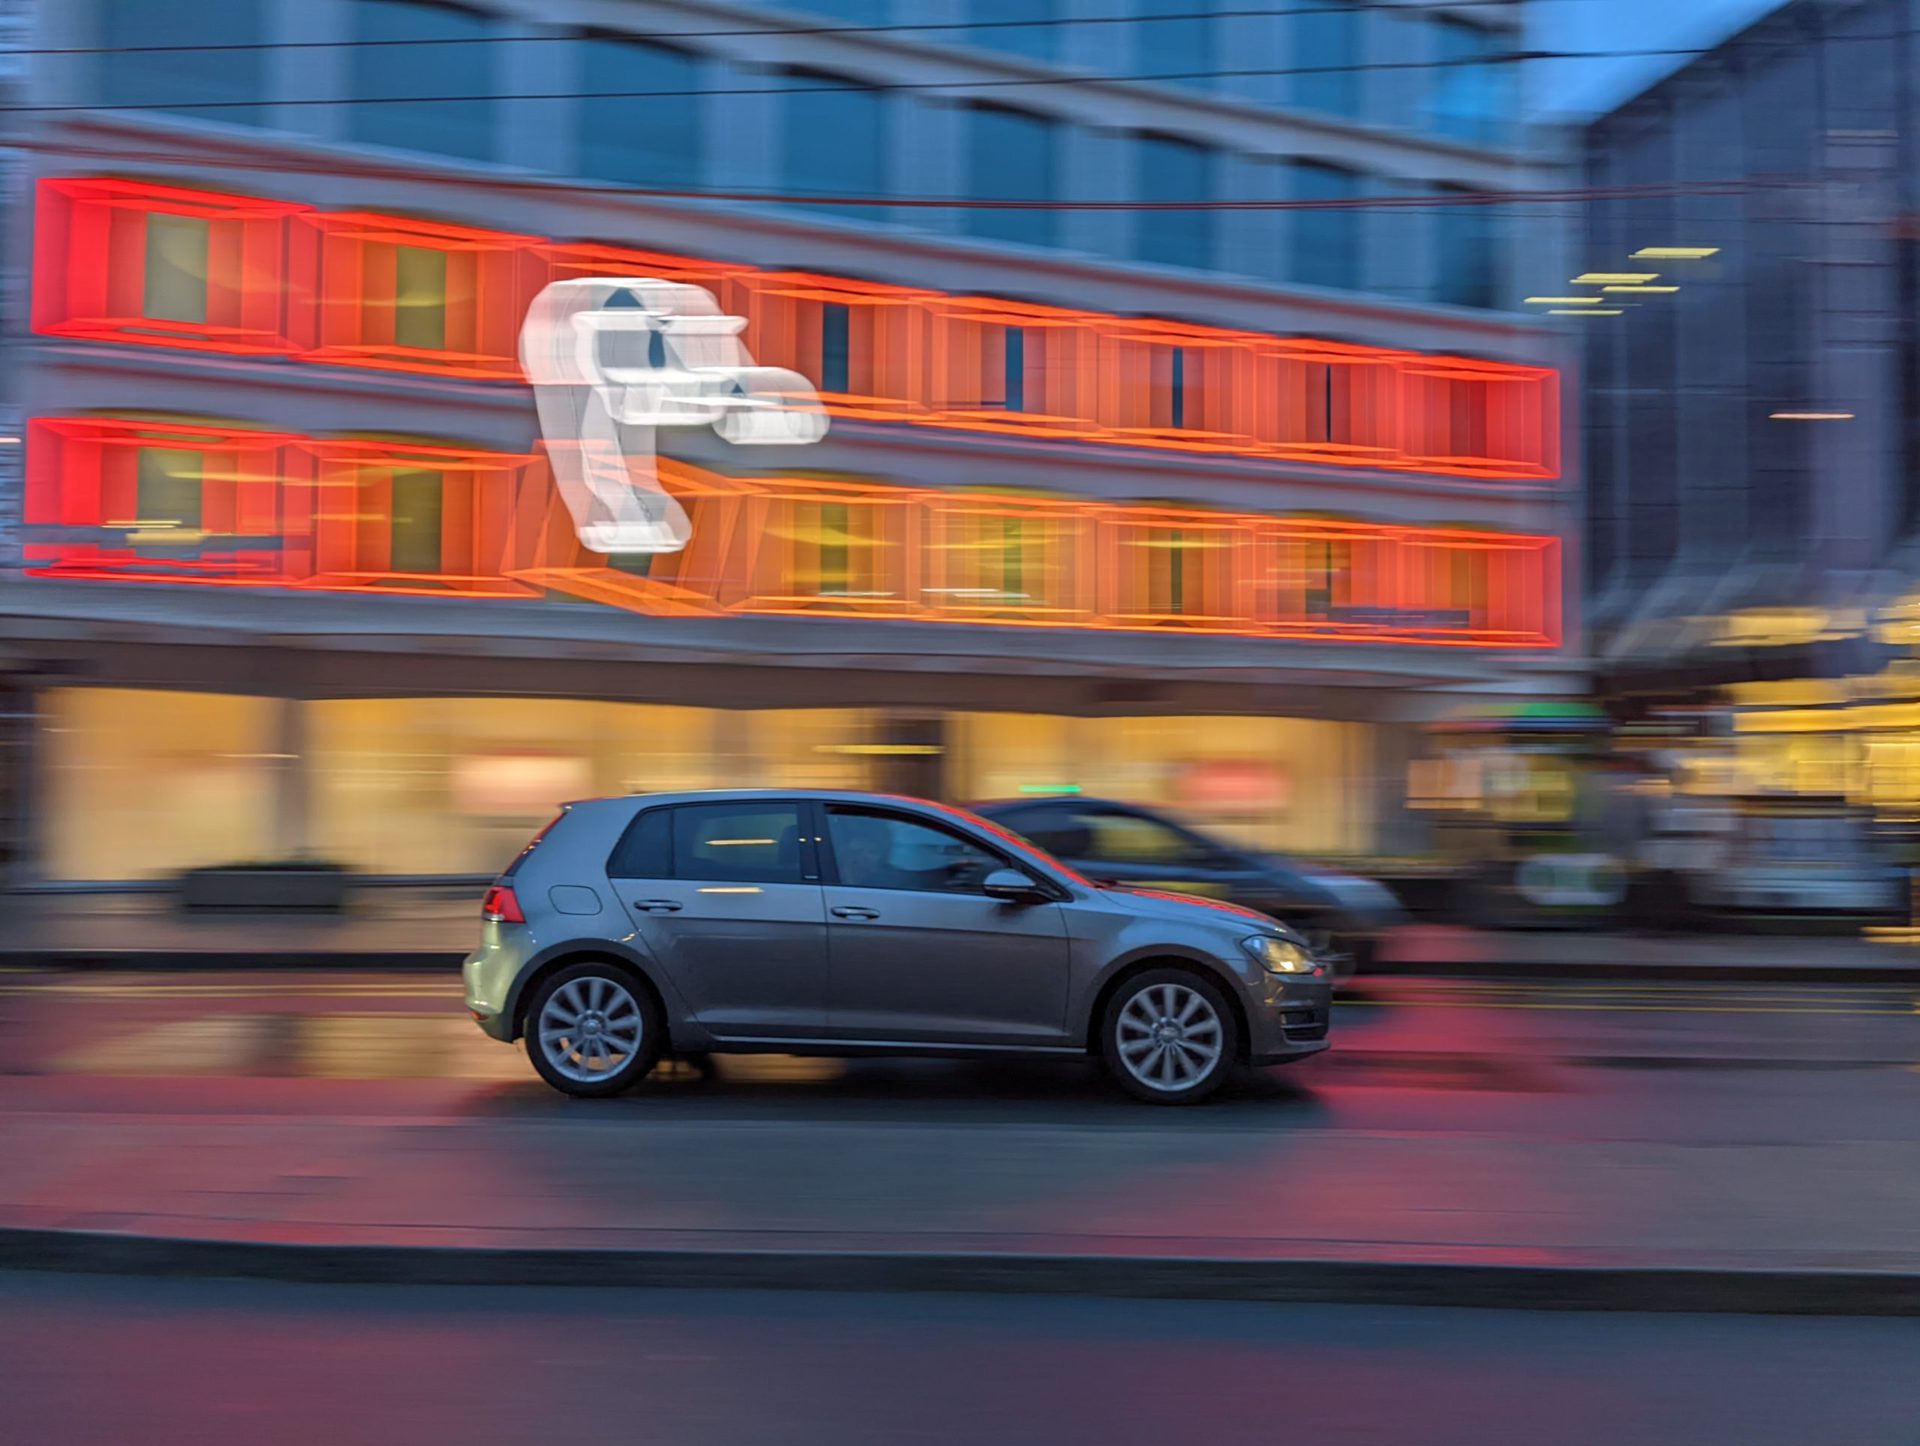 Google Pixel 6 Pro kamera örneği aksiyon tavası arabaları ve neon ışıkları